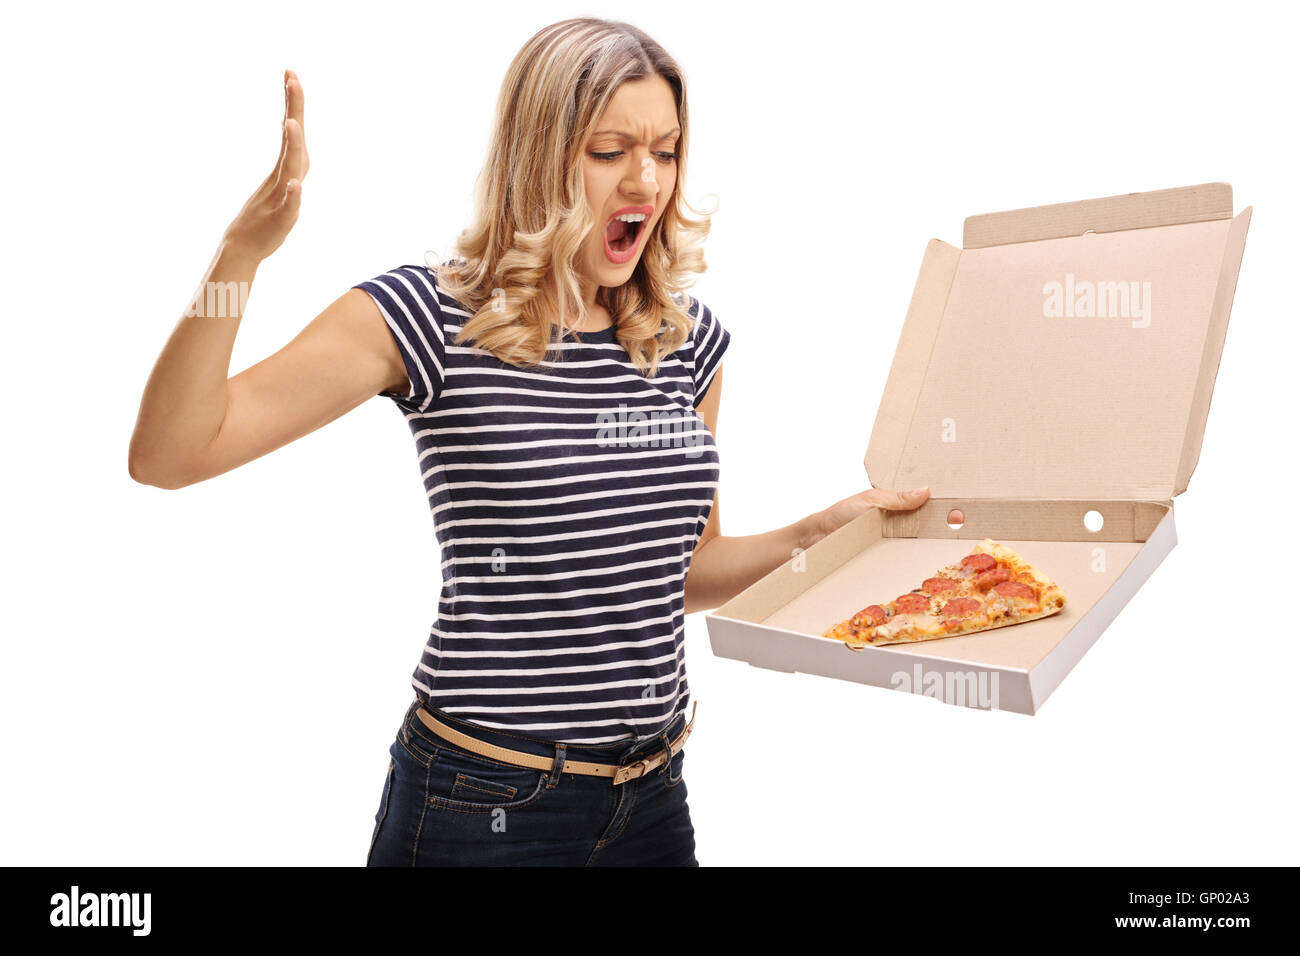 Böse Frau betrachten eine Pizza-Box mit einem einzigen Stück Pizza isoliert auf weißem Hintergrund Stockfoto